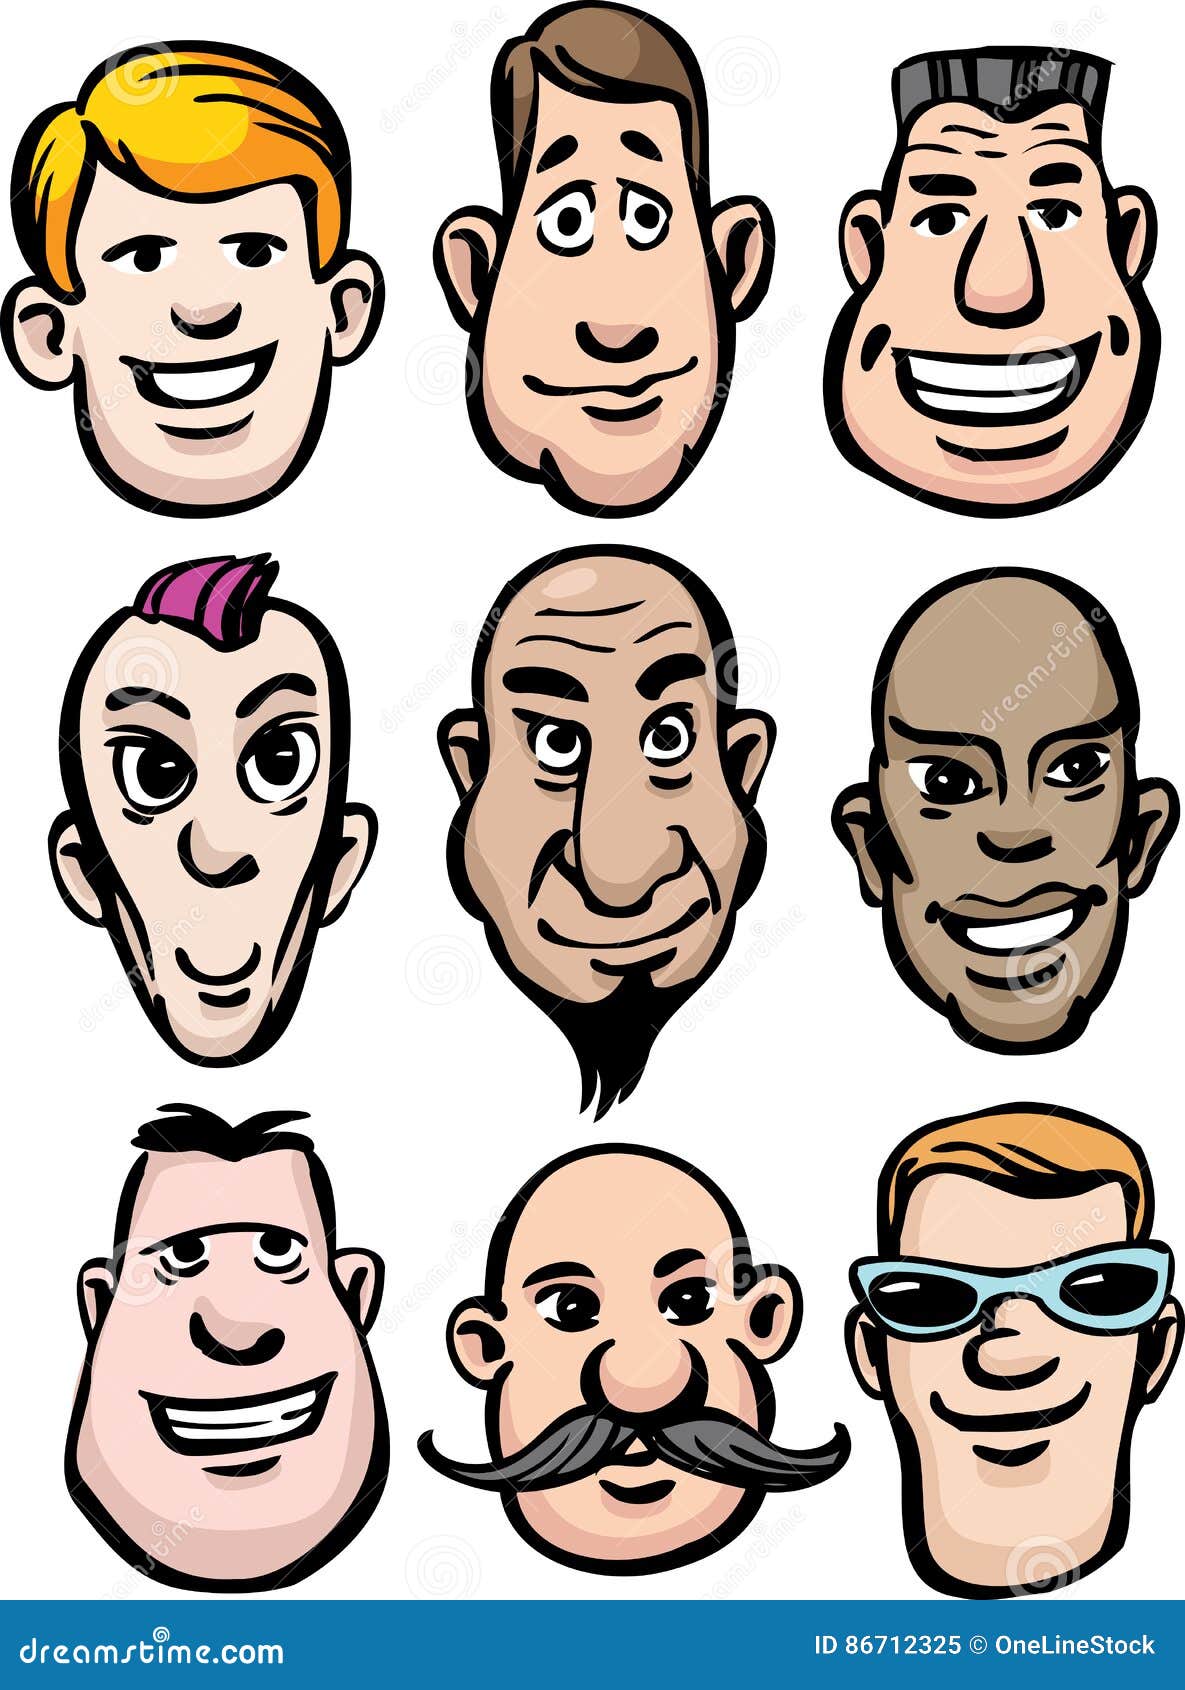 Cartoon men faces stock vector. Illustration of head - 86712325